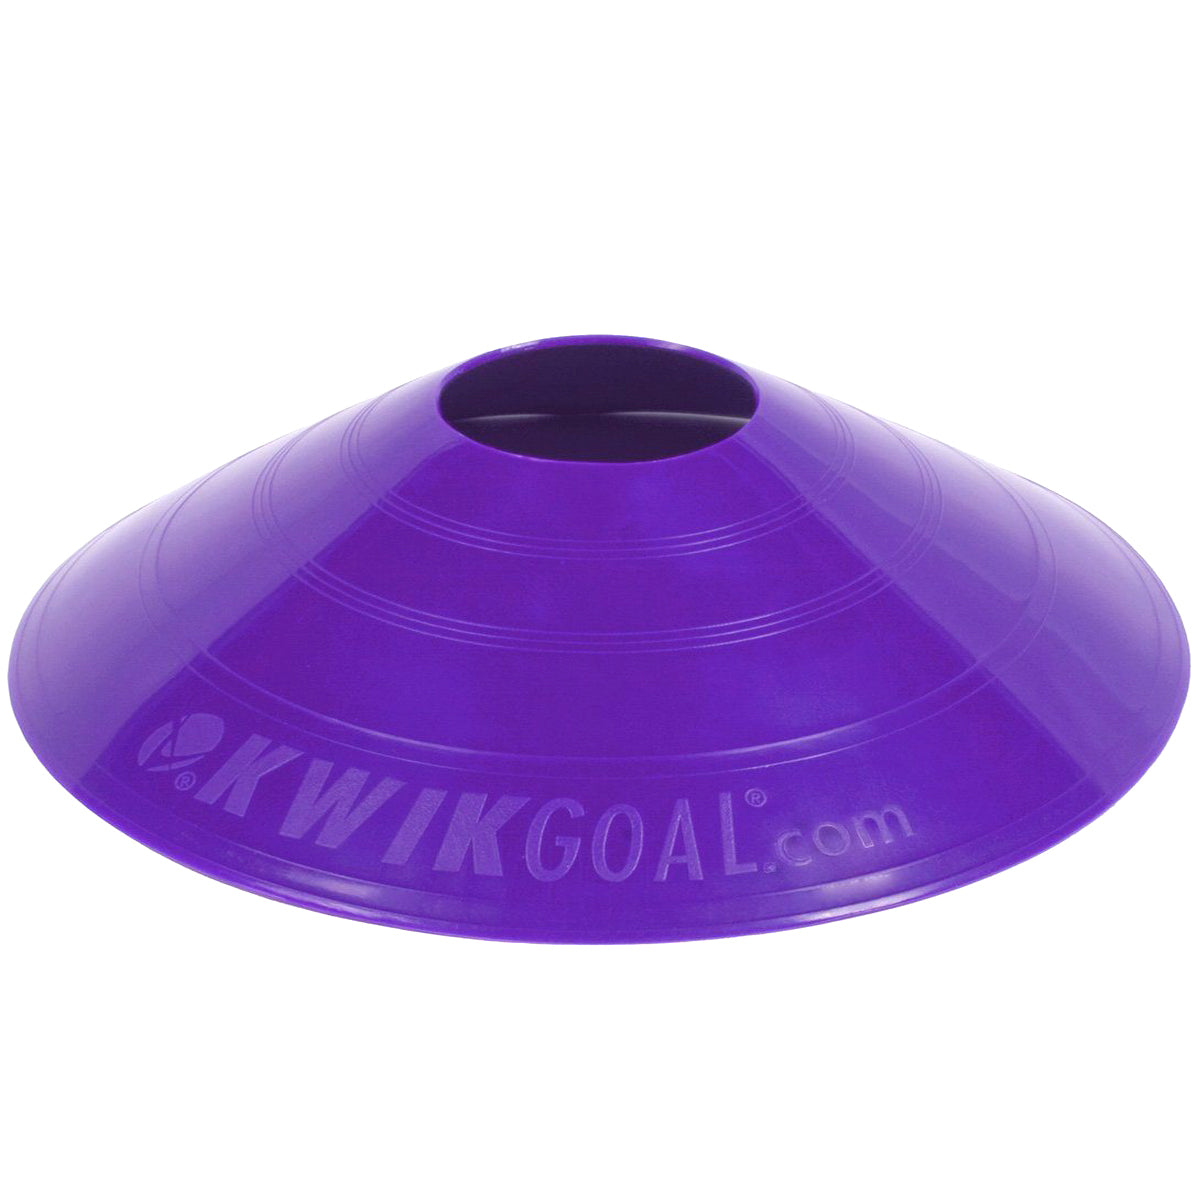 Kwikgoal Small Disc Cones Soccer Coaching Equipment | 6A10 Field equipment Kwikgoal Purple 